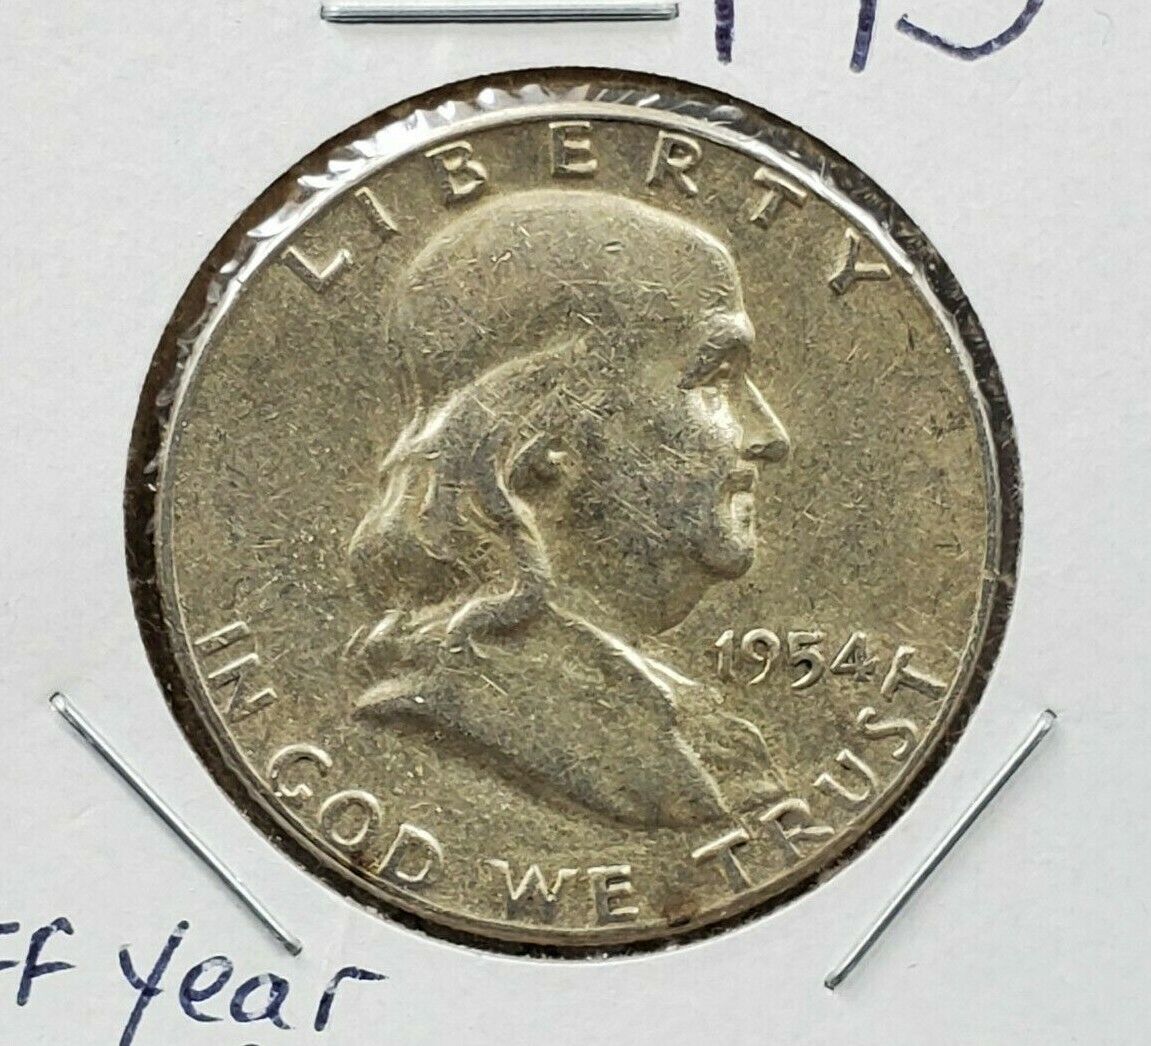 1954 P Franklin Silver 90% Half Dollar Coin Bugs Bunny FS-401 EF XF Details